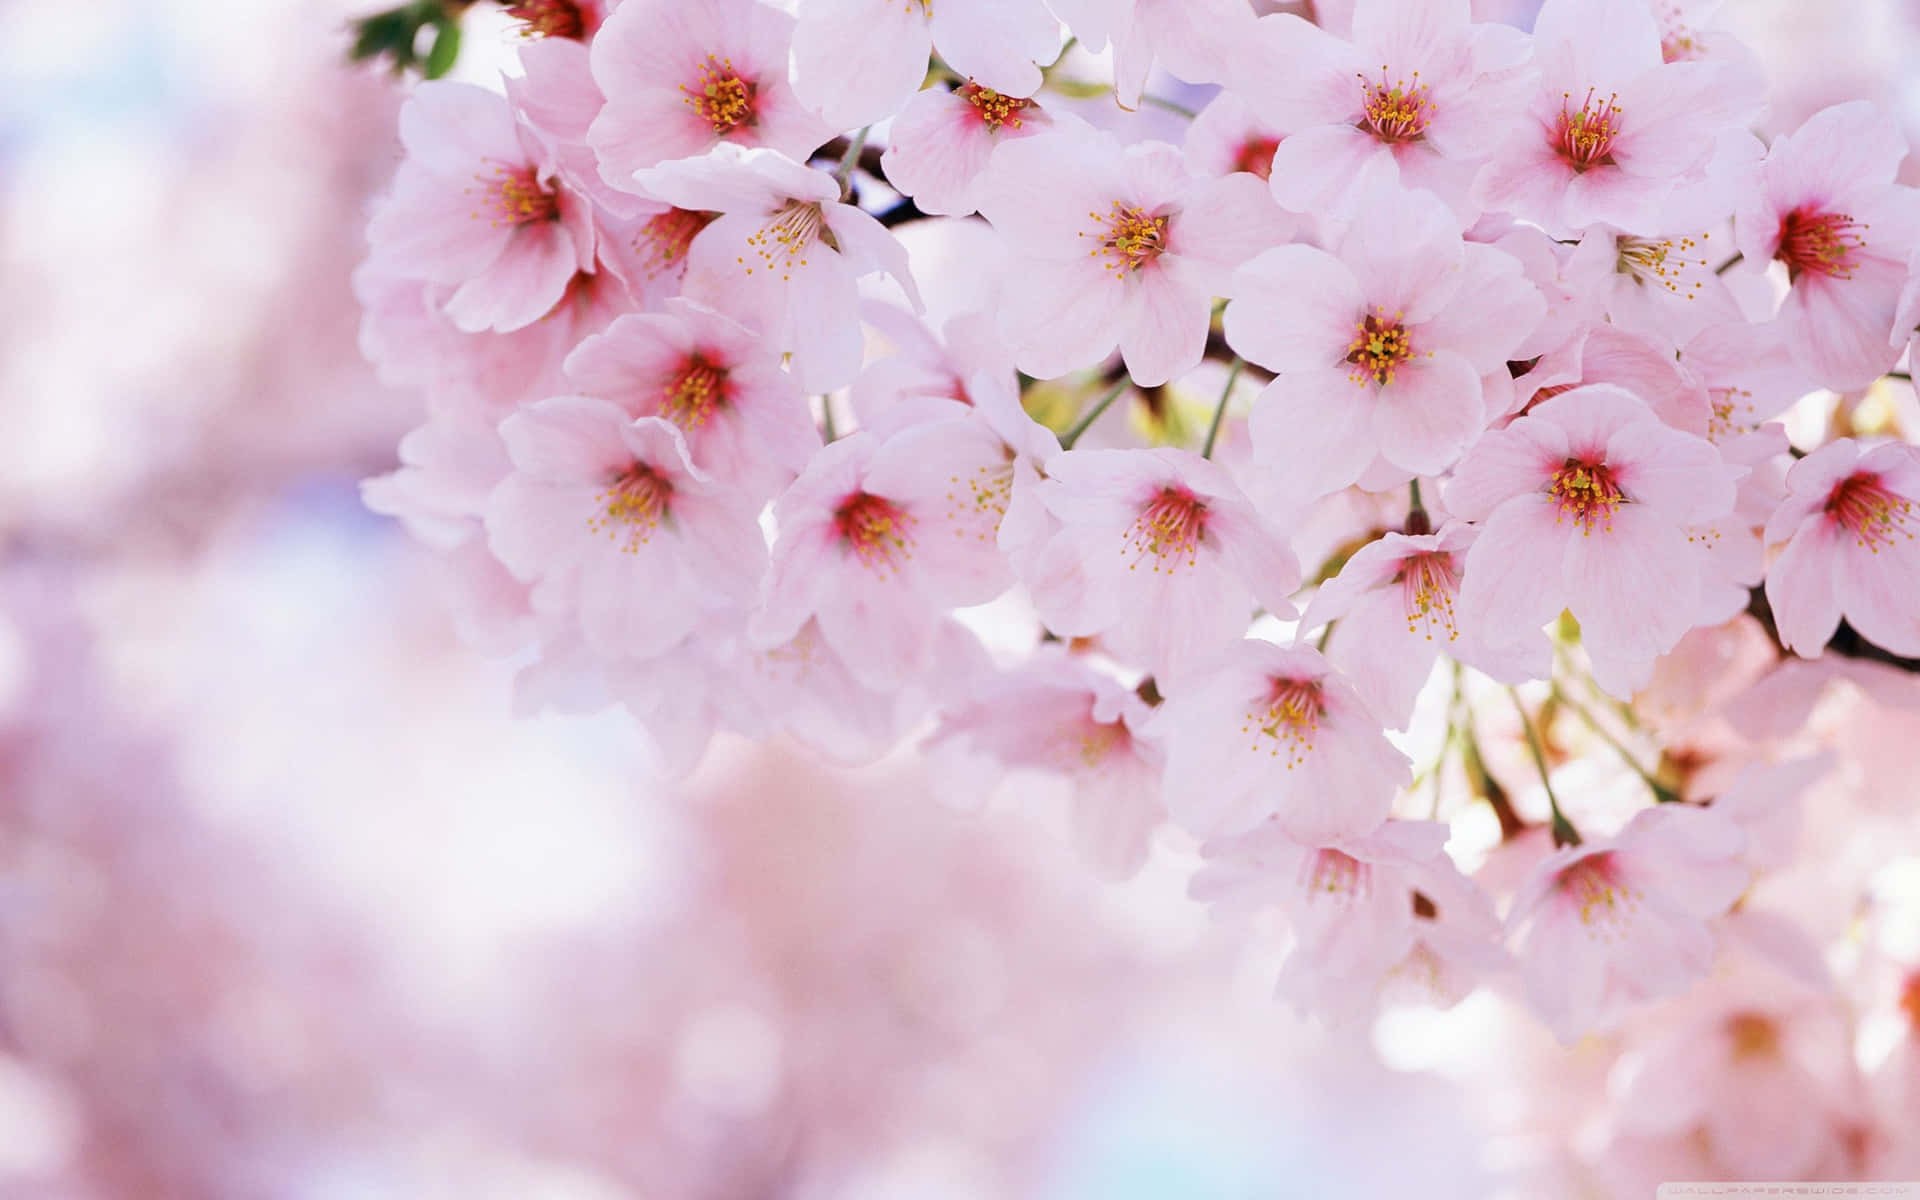 Attnjuta Av En Vacker Dag Med Sakura-blomningarna.